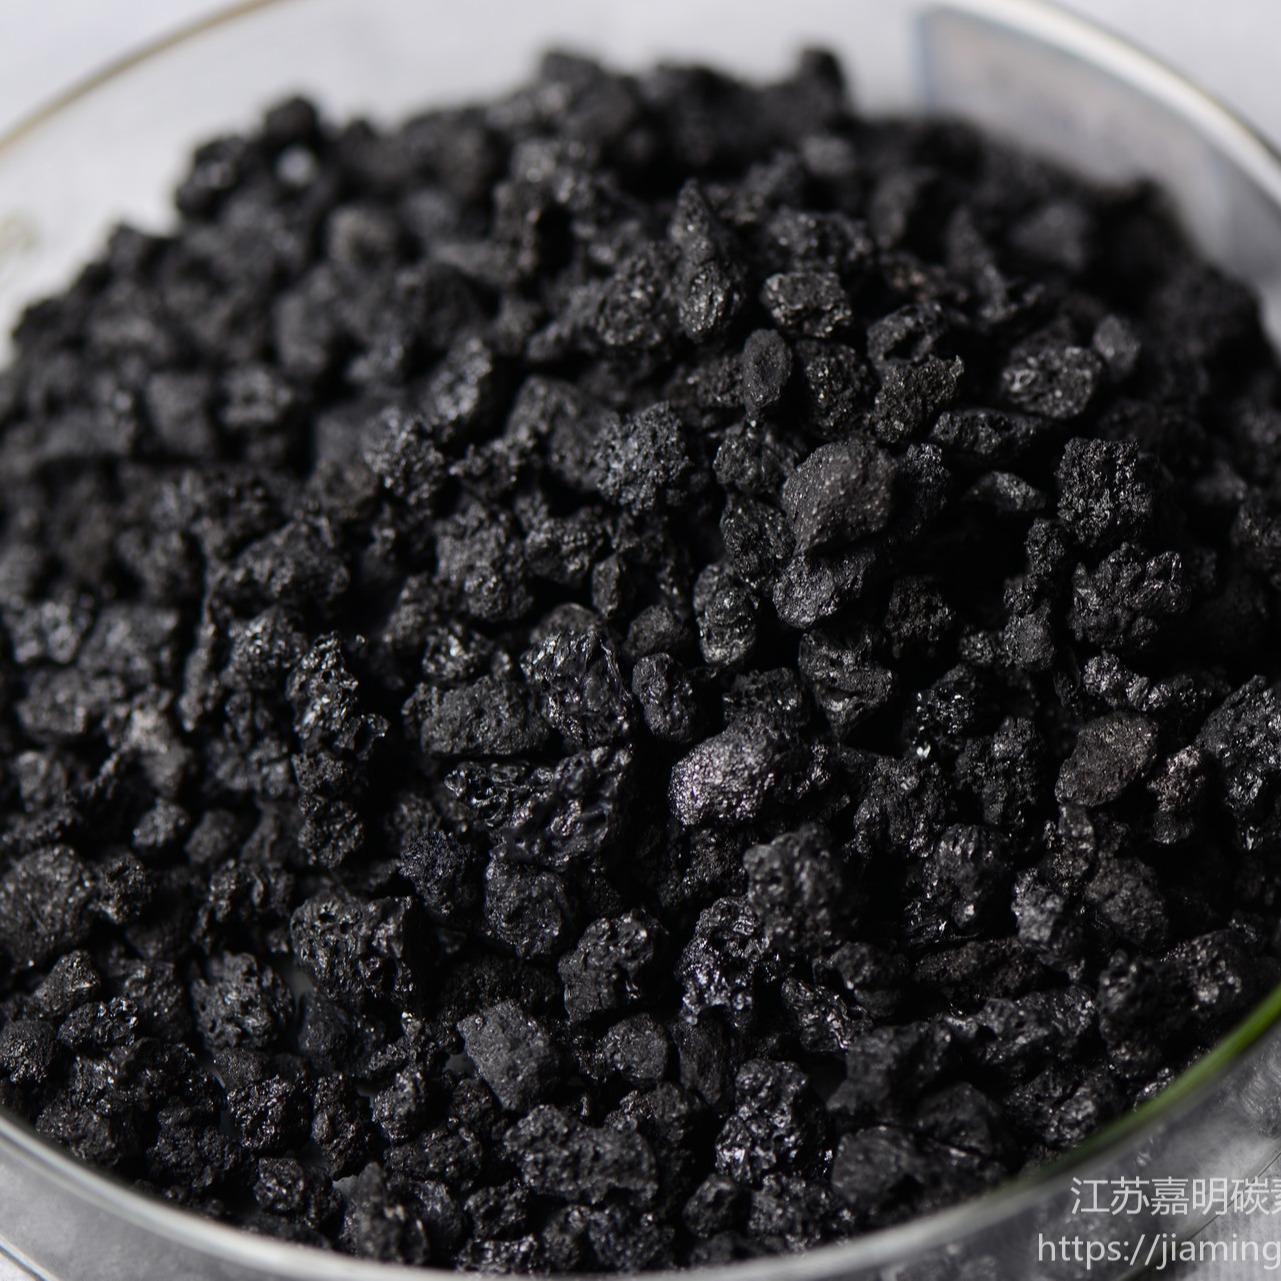 嘉明 高品质煅烧焦增碳剂专业厂家 增碳剂价格